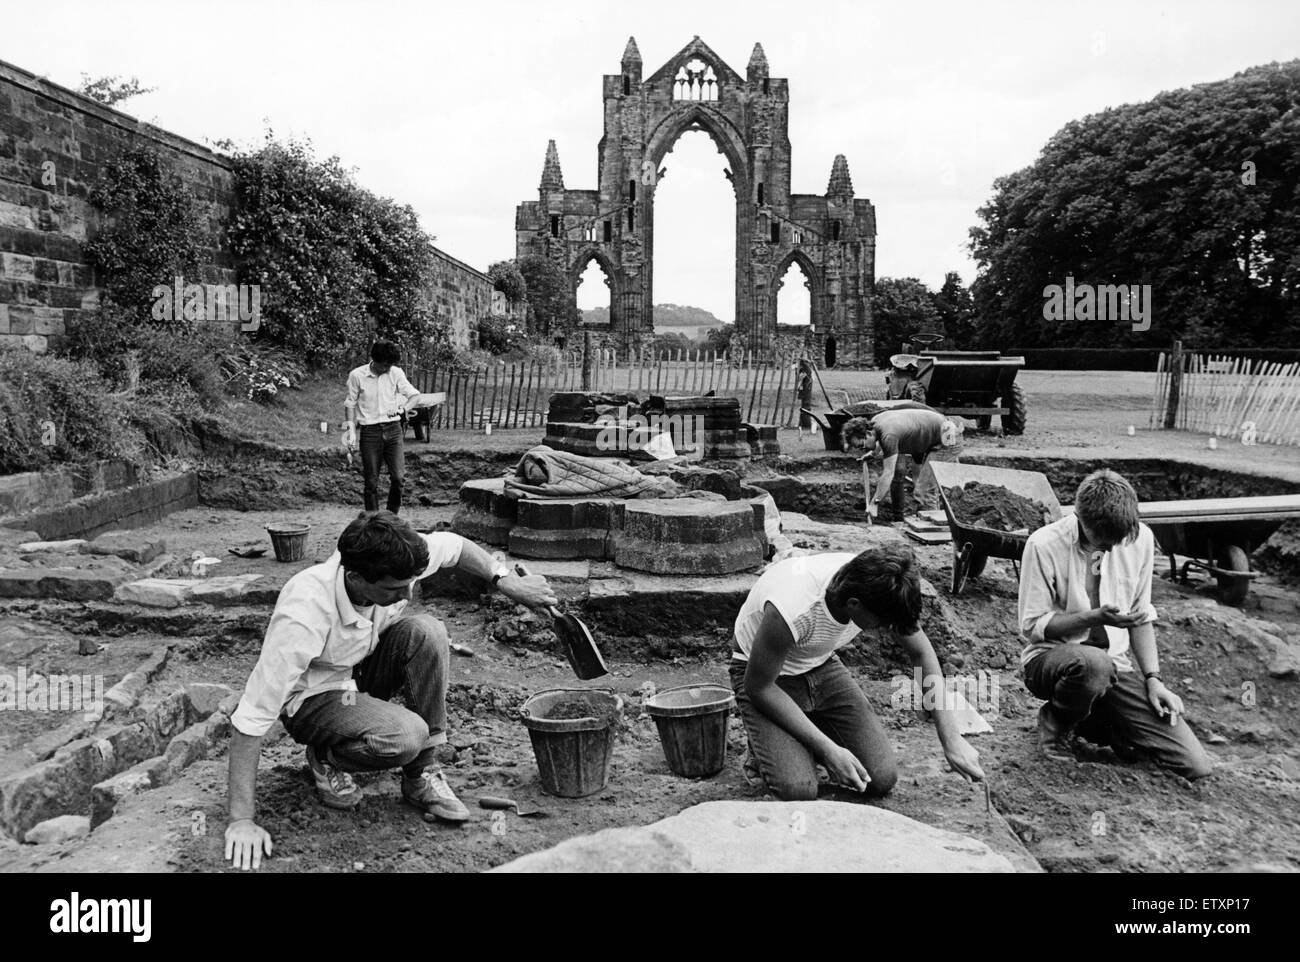 Lavori di scavo a Guisborough Priory. Il 6 settembre 1985. Foto Stock